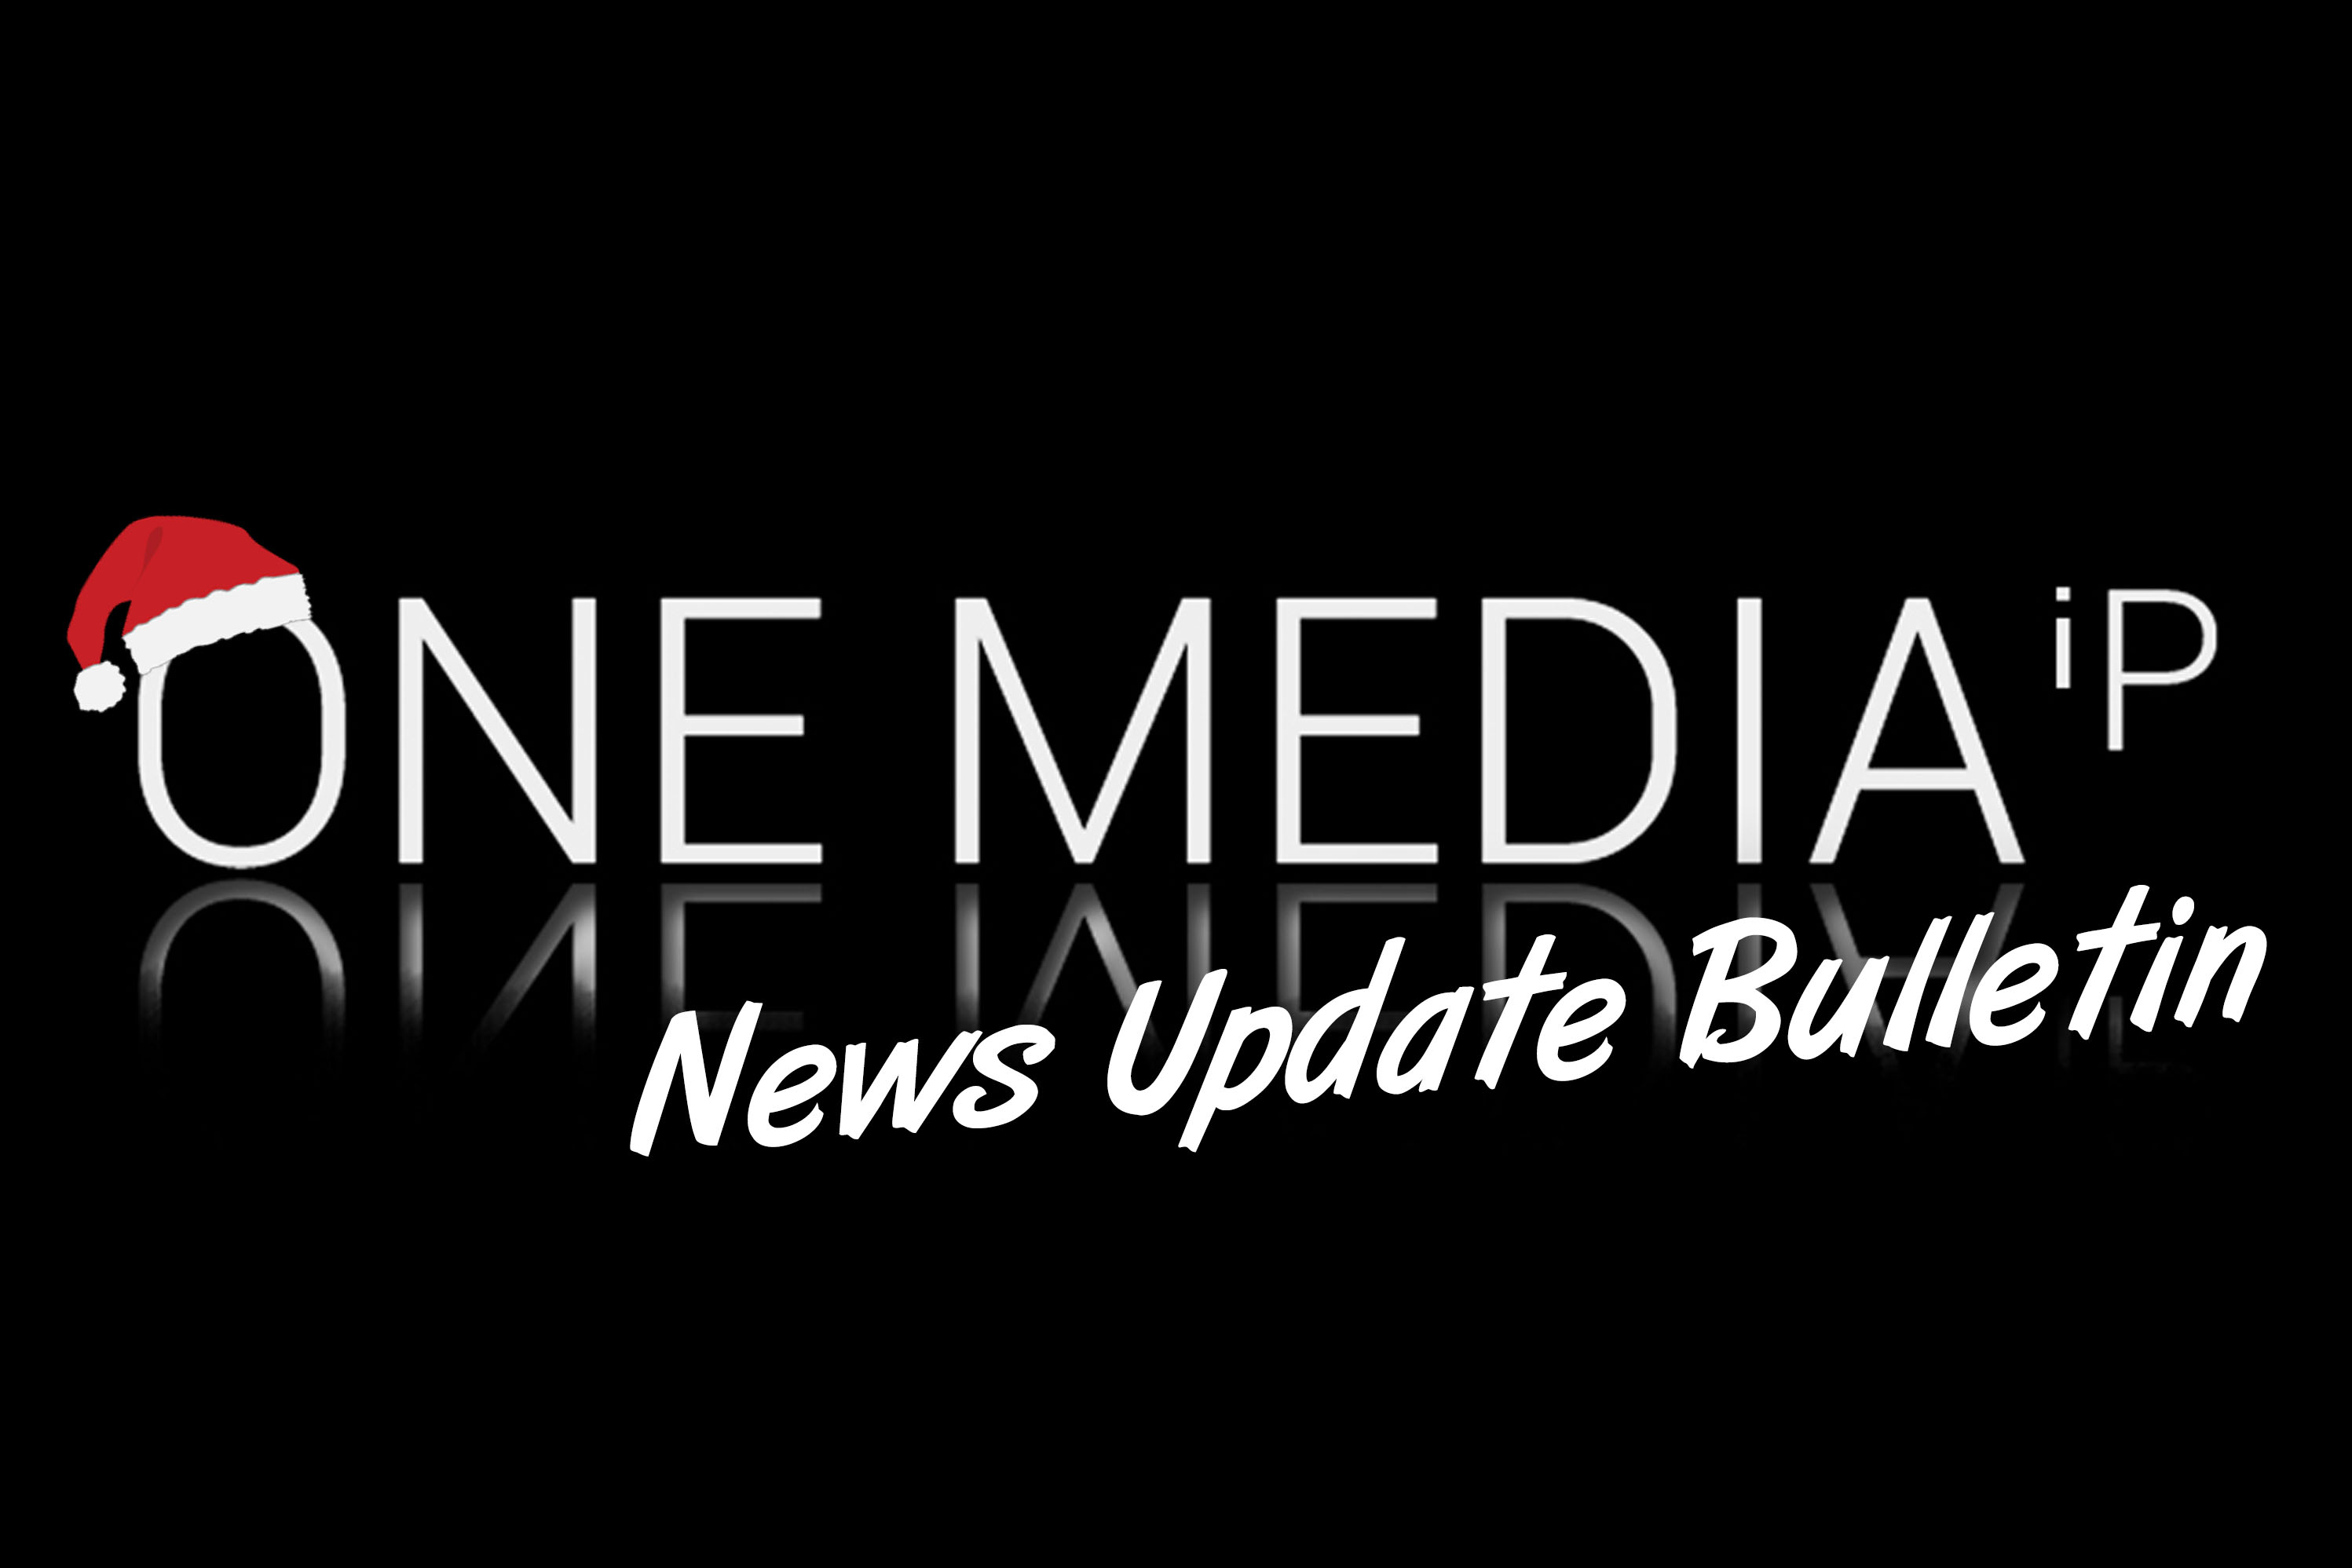 News Update Bulletin November 2021